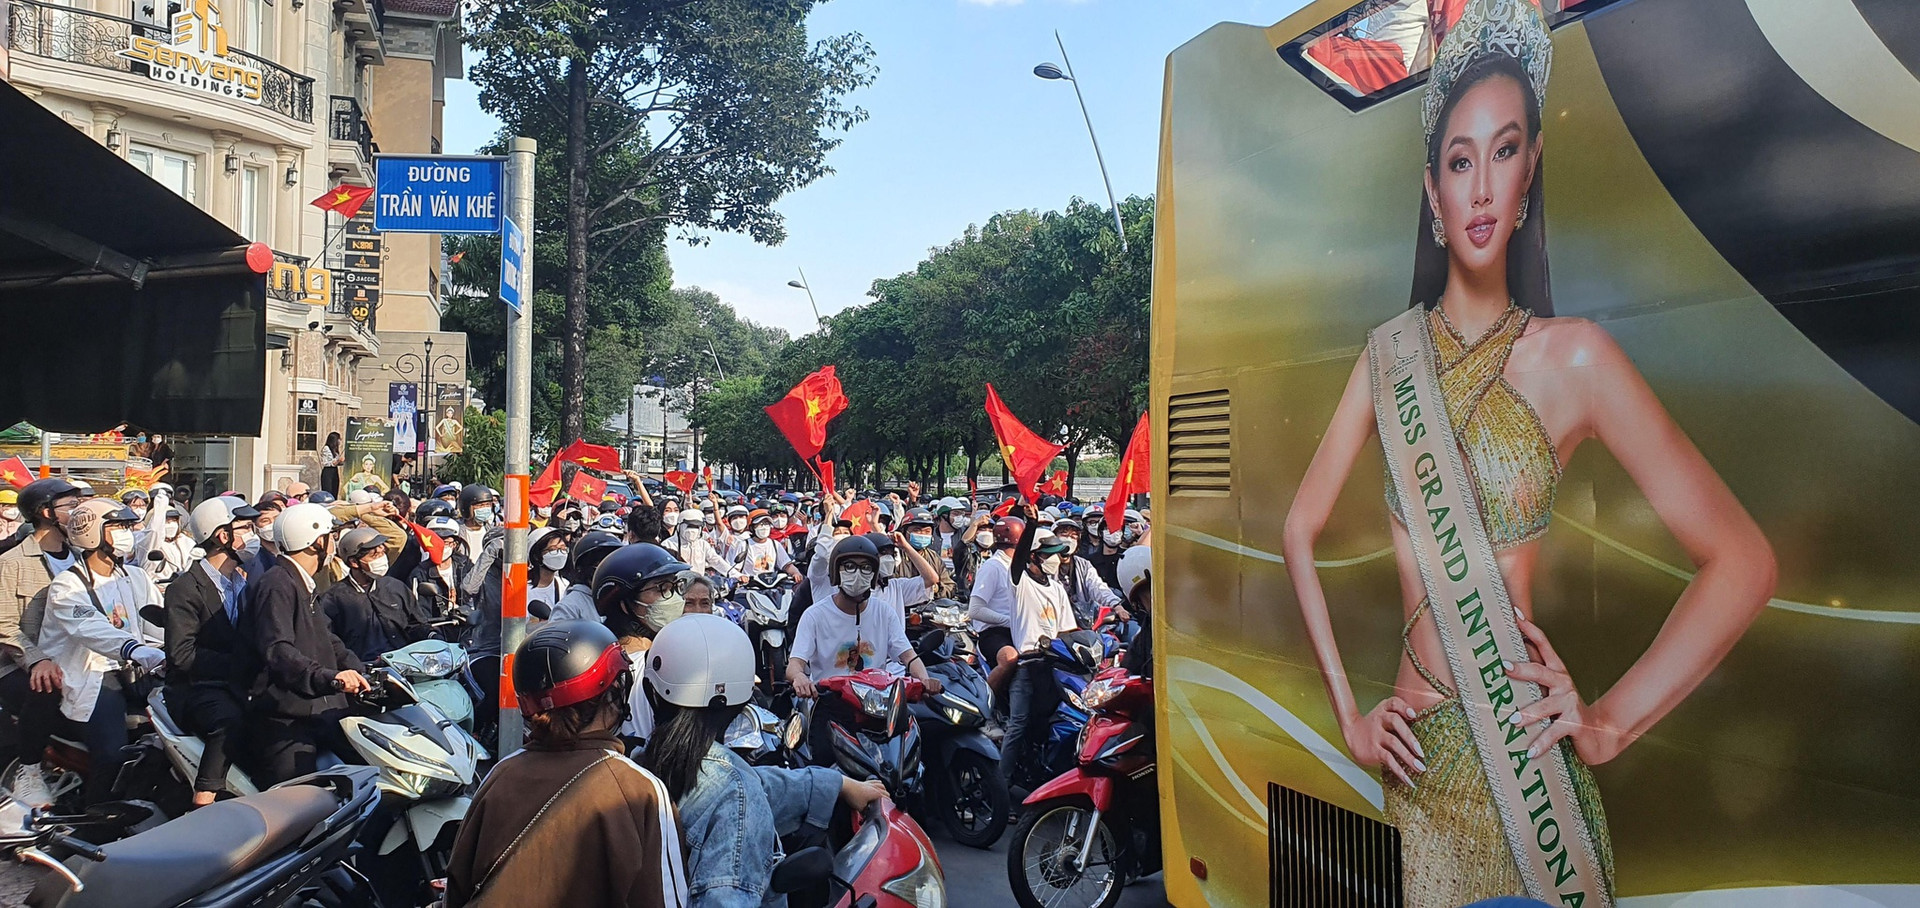 Hàng ngàn người diễu hành cùng hoa hậu Thùy Tiên - ảnh 3